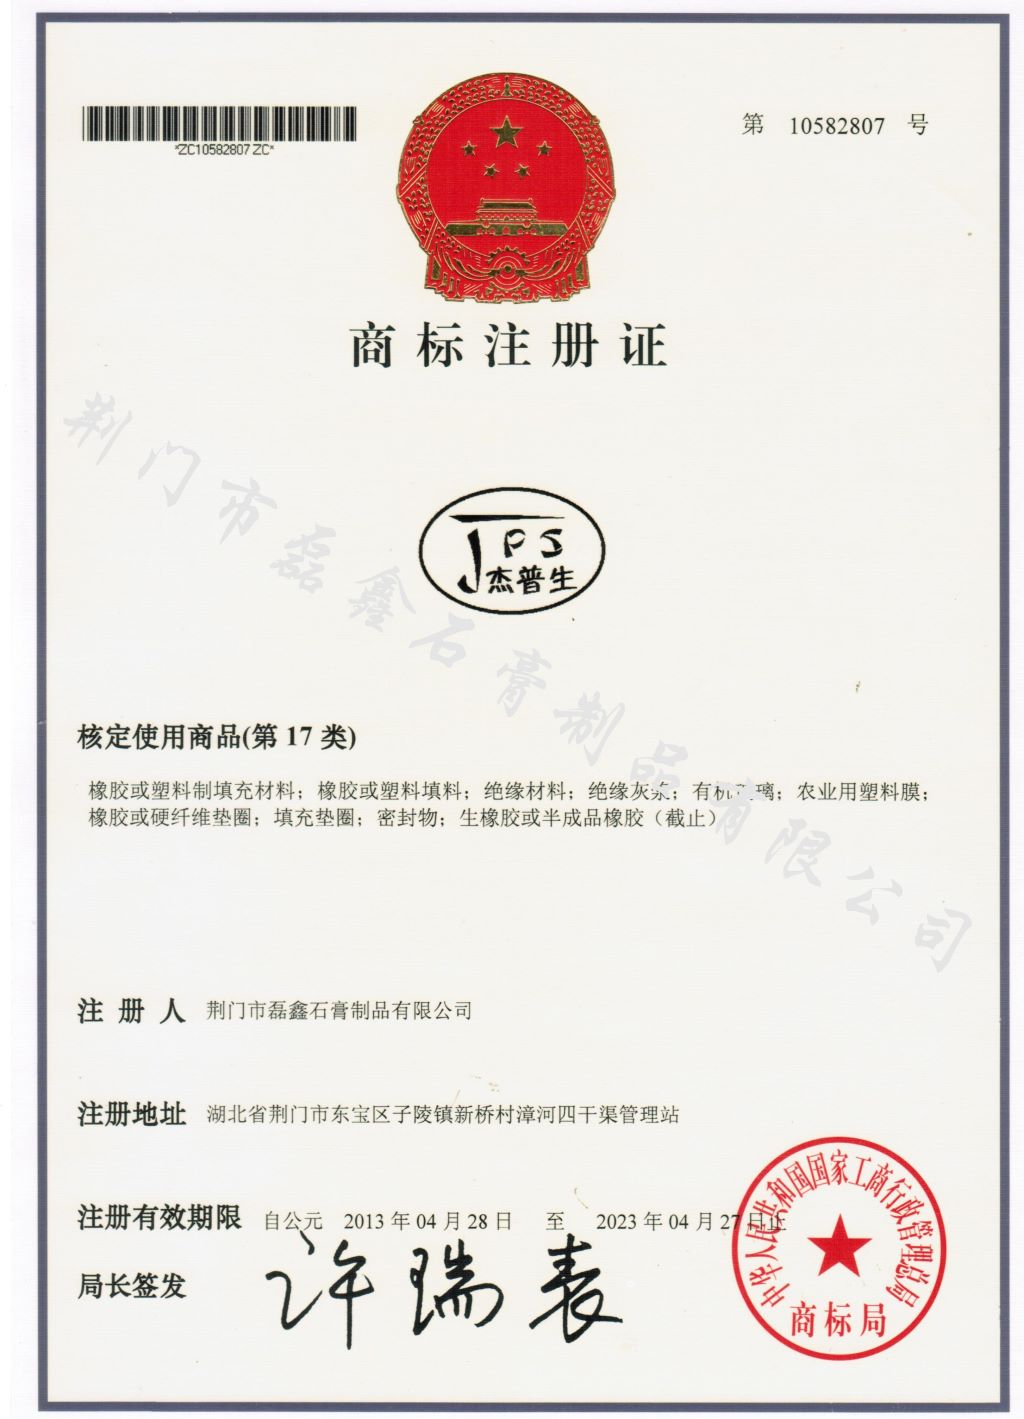 商标注册证-杰普生201307121111.jpg